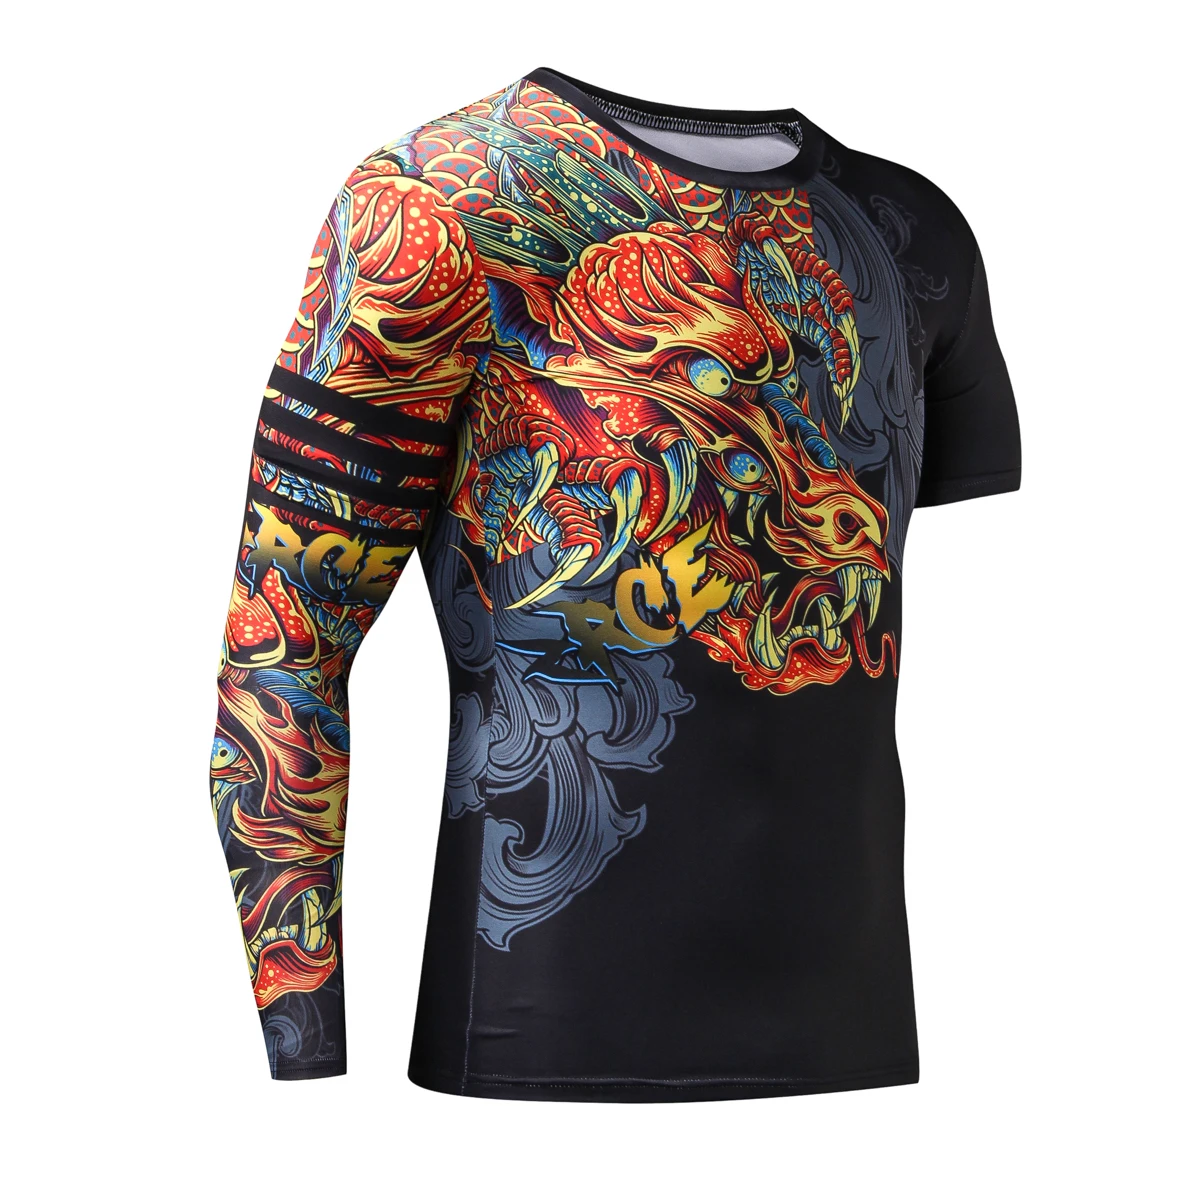 Компрессионная футболка в китайском стиле, Забавные футболки с драконом, брендовая одежда, футболка с 3D рисунком, Футболка с рукавами, мужские футболки для тренировок